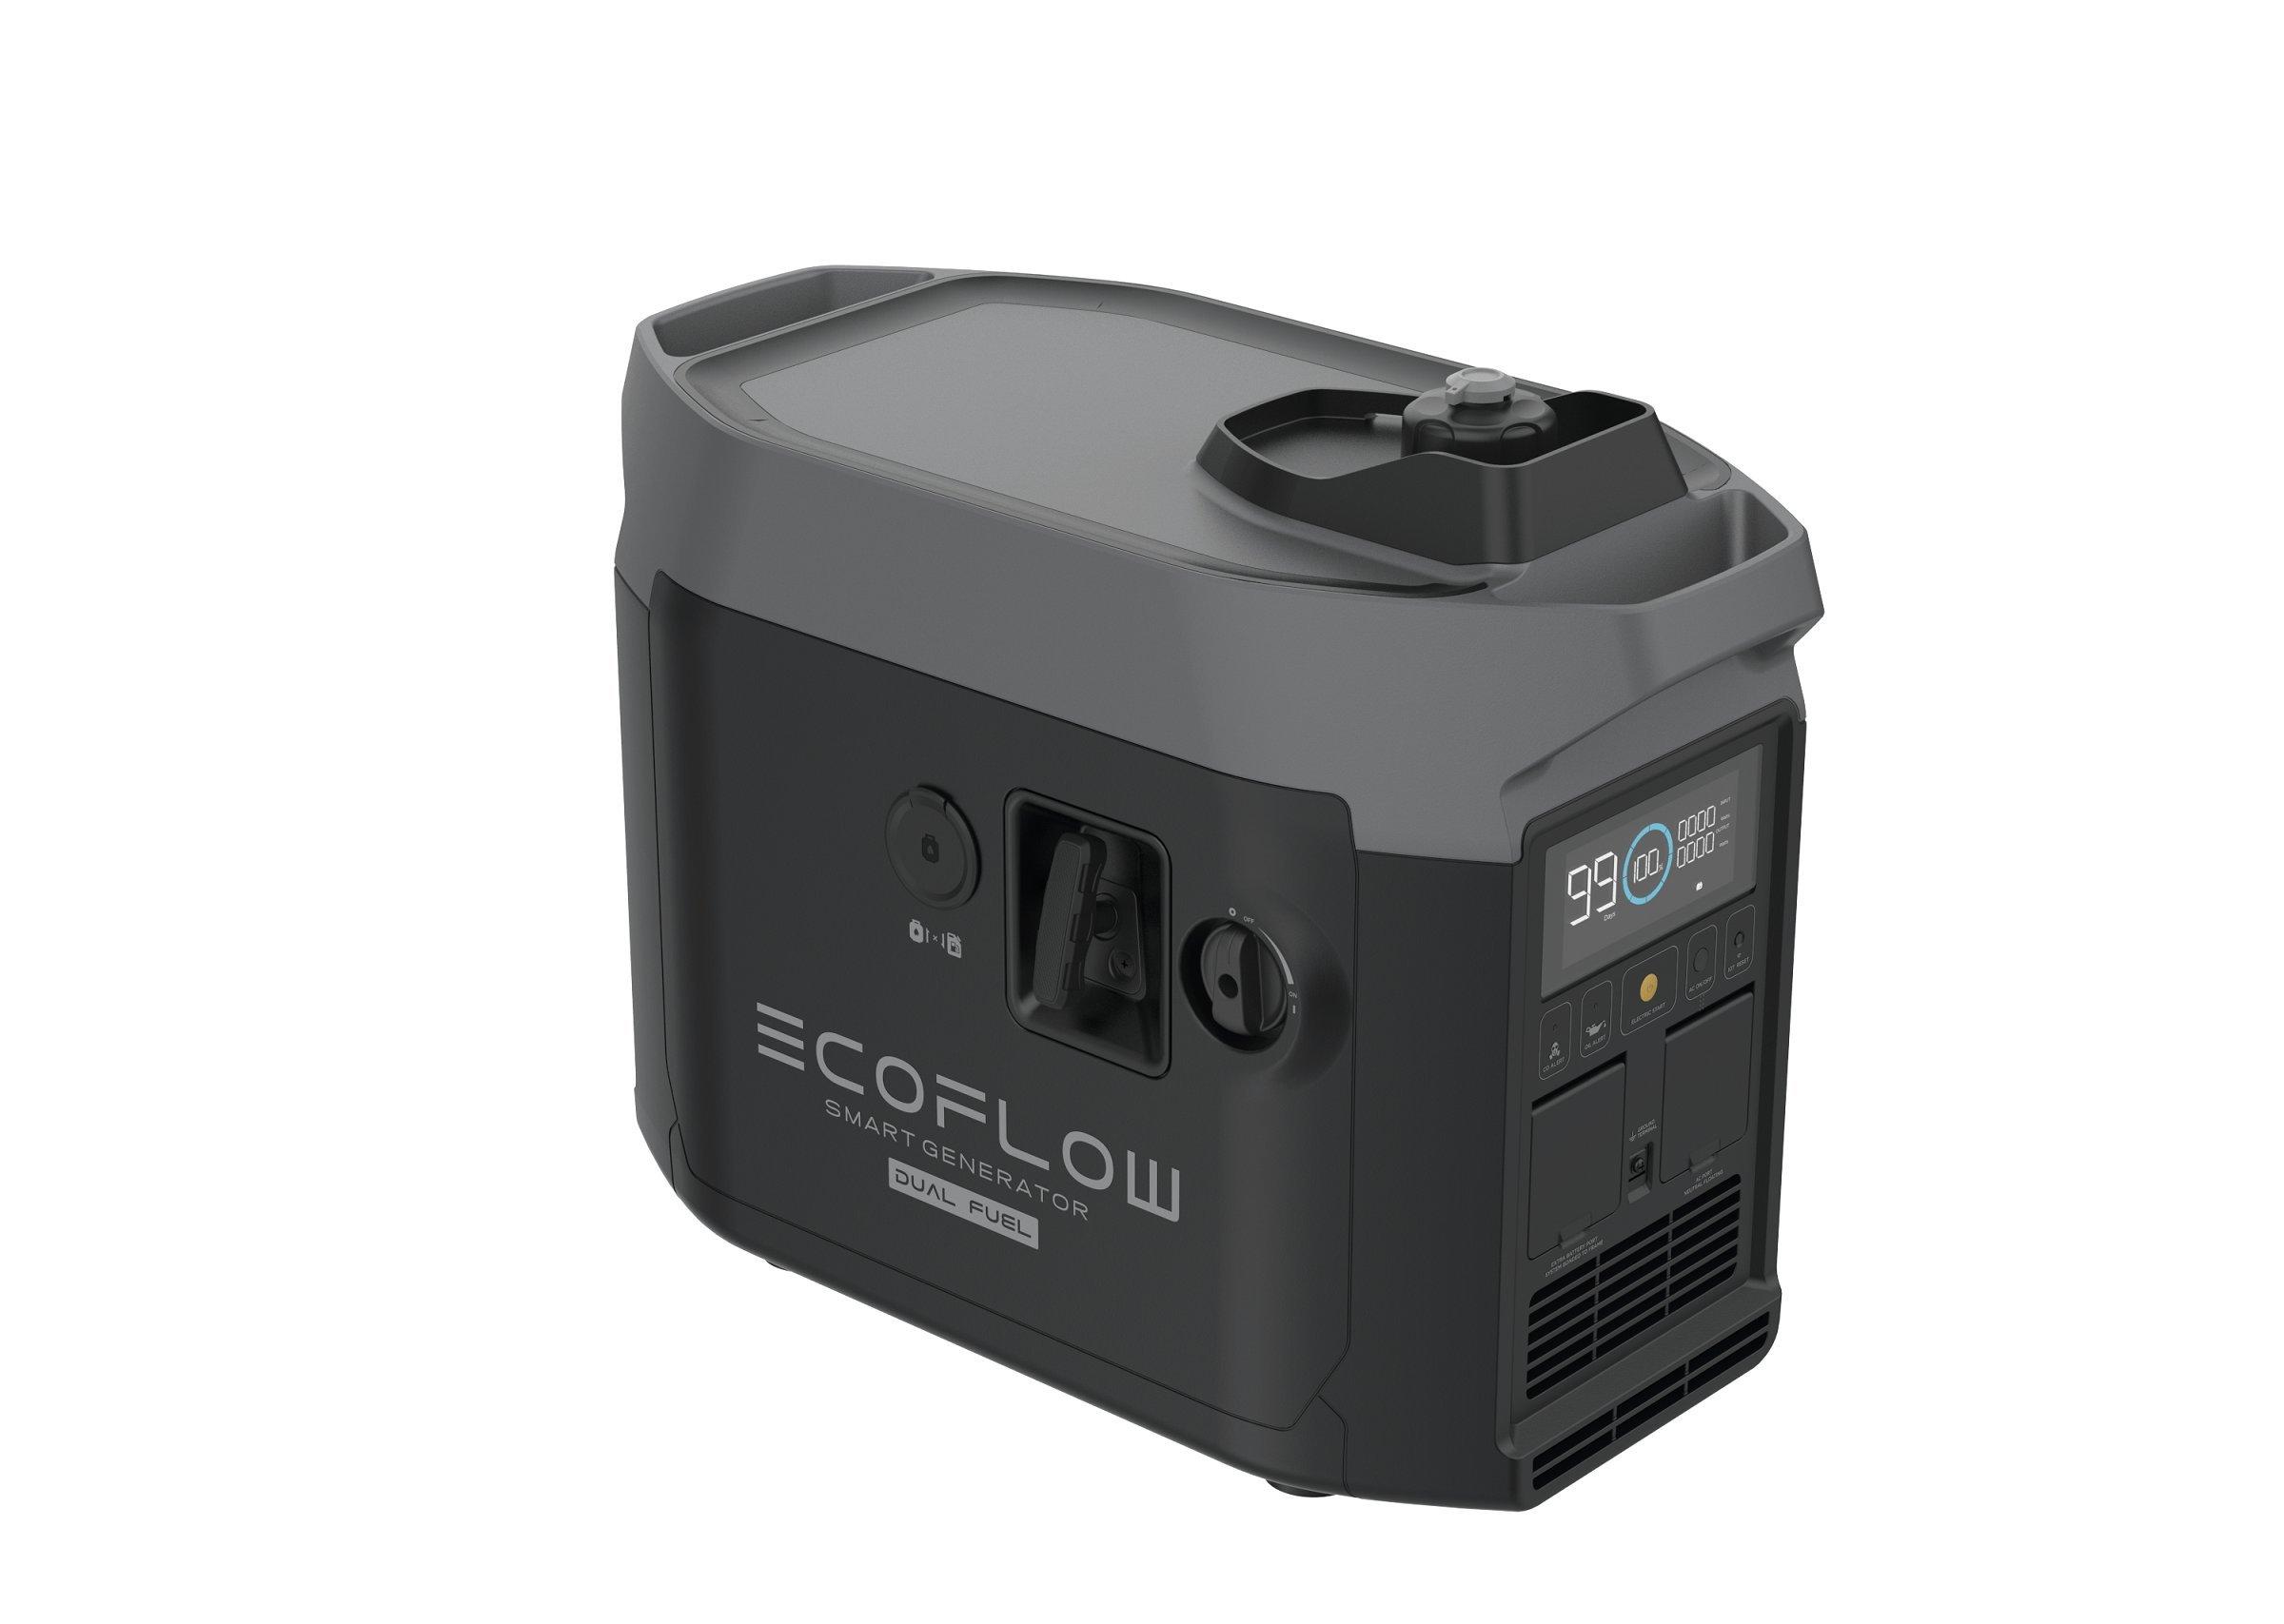 EcoFlow  Dual Fuel Smart Generator 